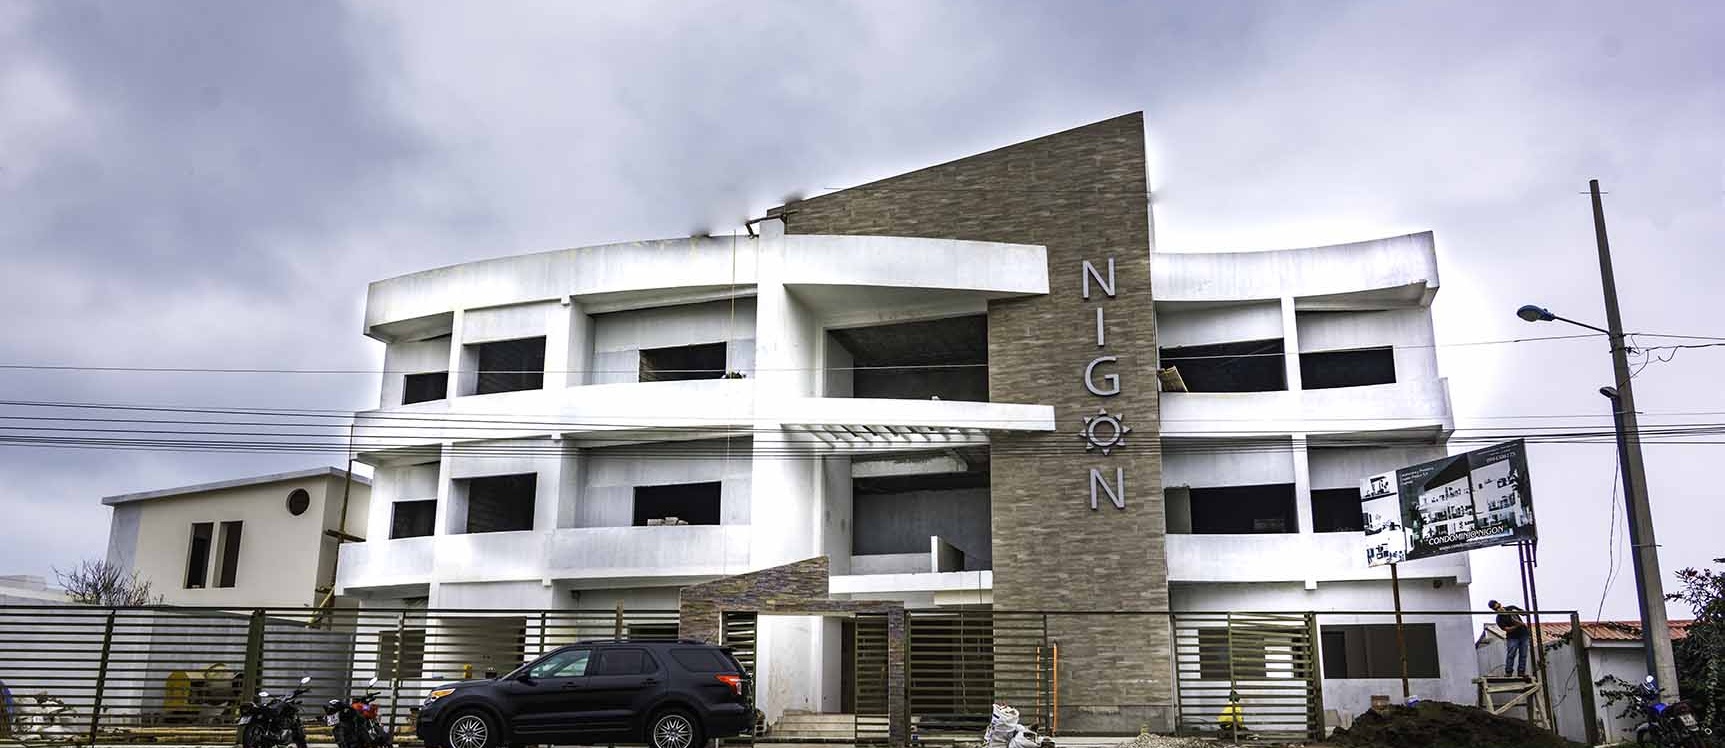 GeoBienes - Departamento en venta en Condominio Nigon en Capaes - Santa Elena - Plusvalia Guayaquil Casas de venta y alquiler Inmobiliaria Ecuador